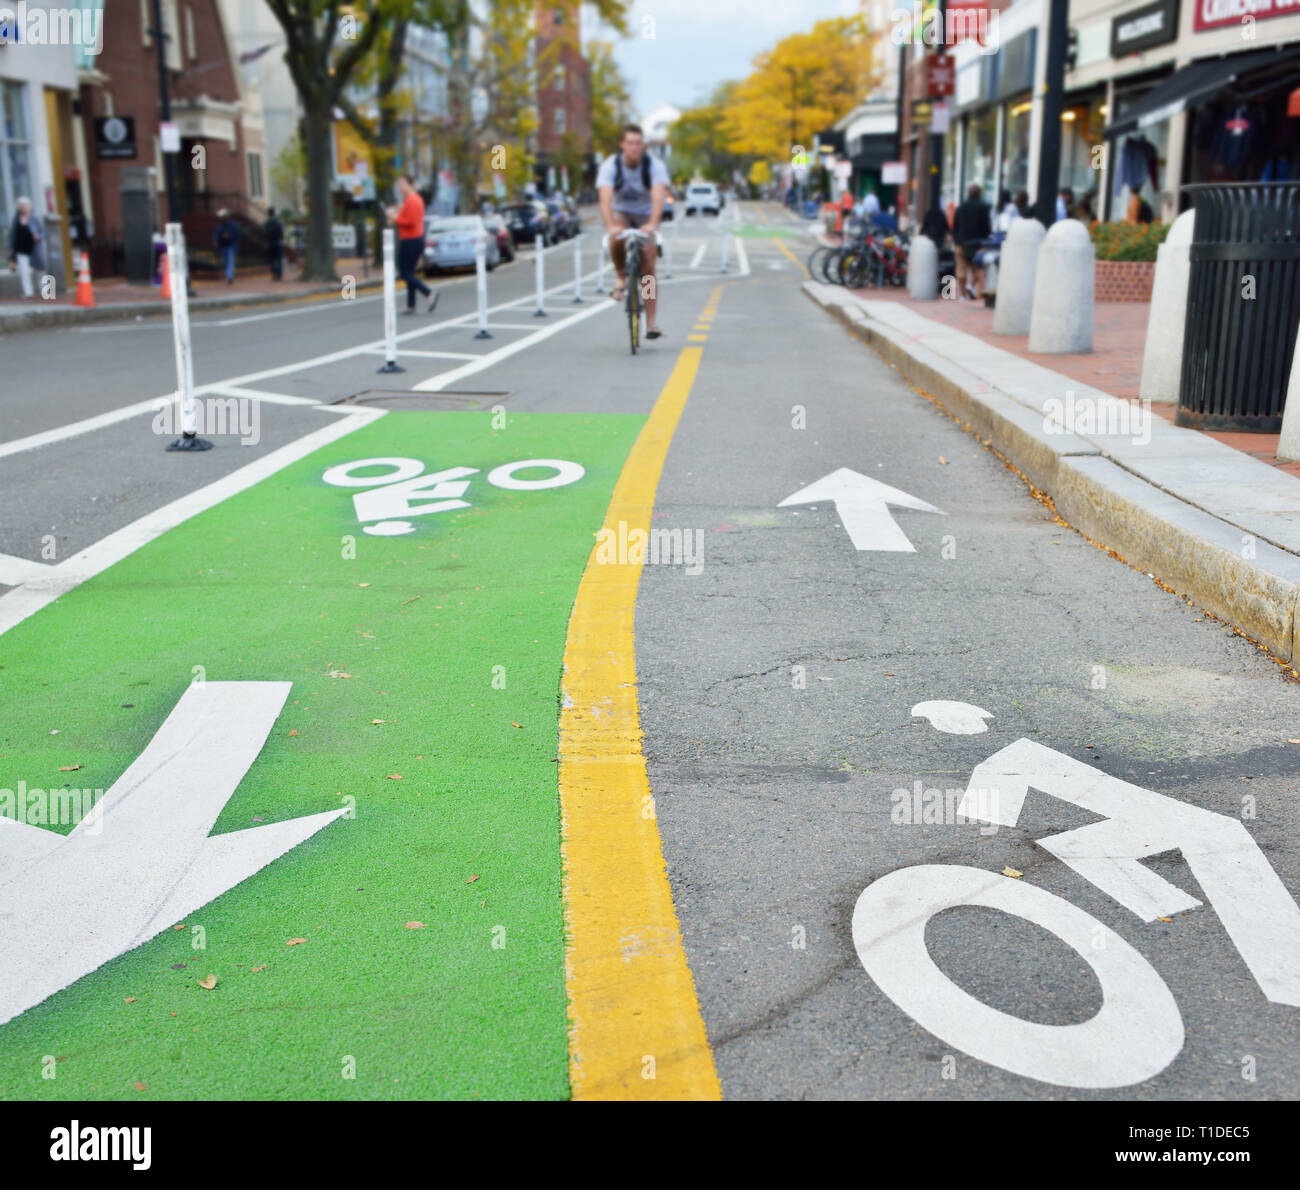 Zwei-wege geschützt Radweg. Malte pavement Marker in Grün, Gelb und Weiß. Biker und Menschen zu Fuß auf der Straße Stockfoto